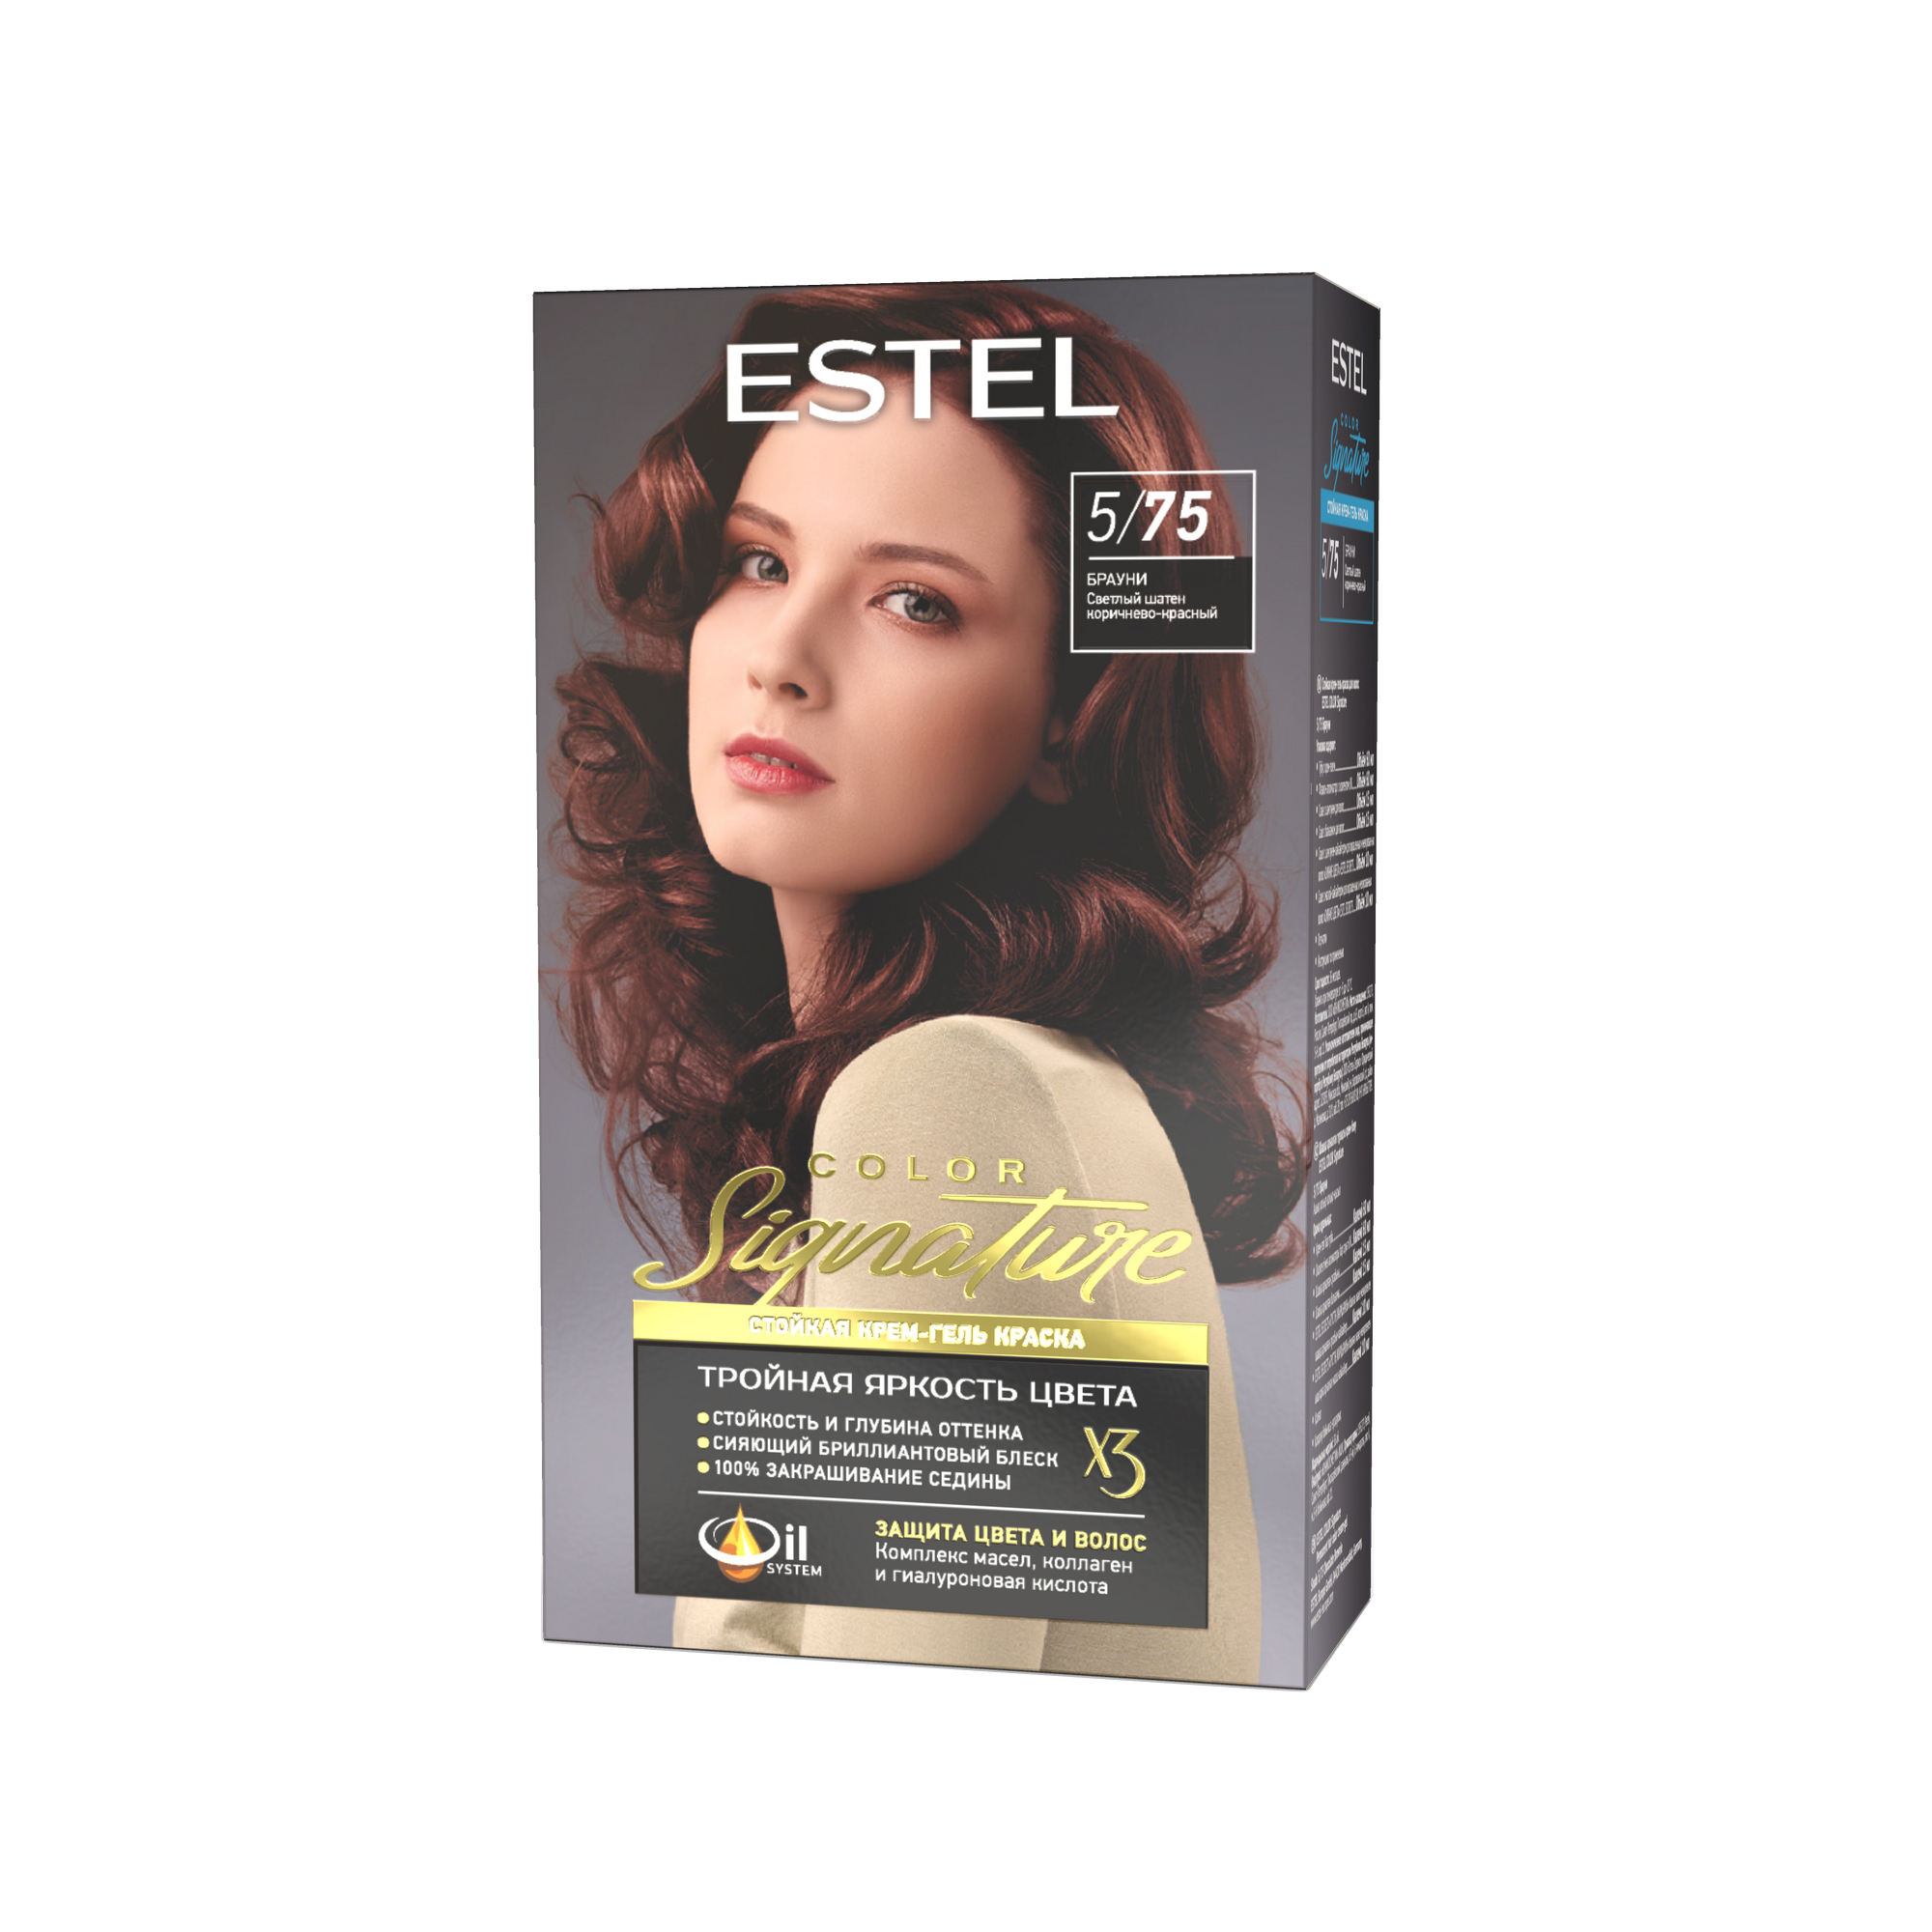 Краска для волос Estel Color Signature тон 5.75  брауни - в интернет-магазине TUT-BEAUTY.BY с доставкой.